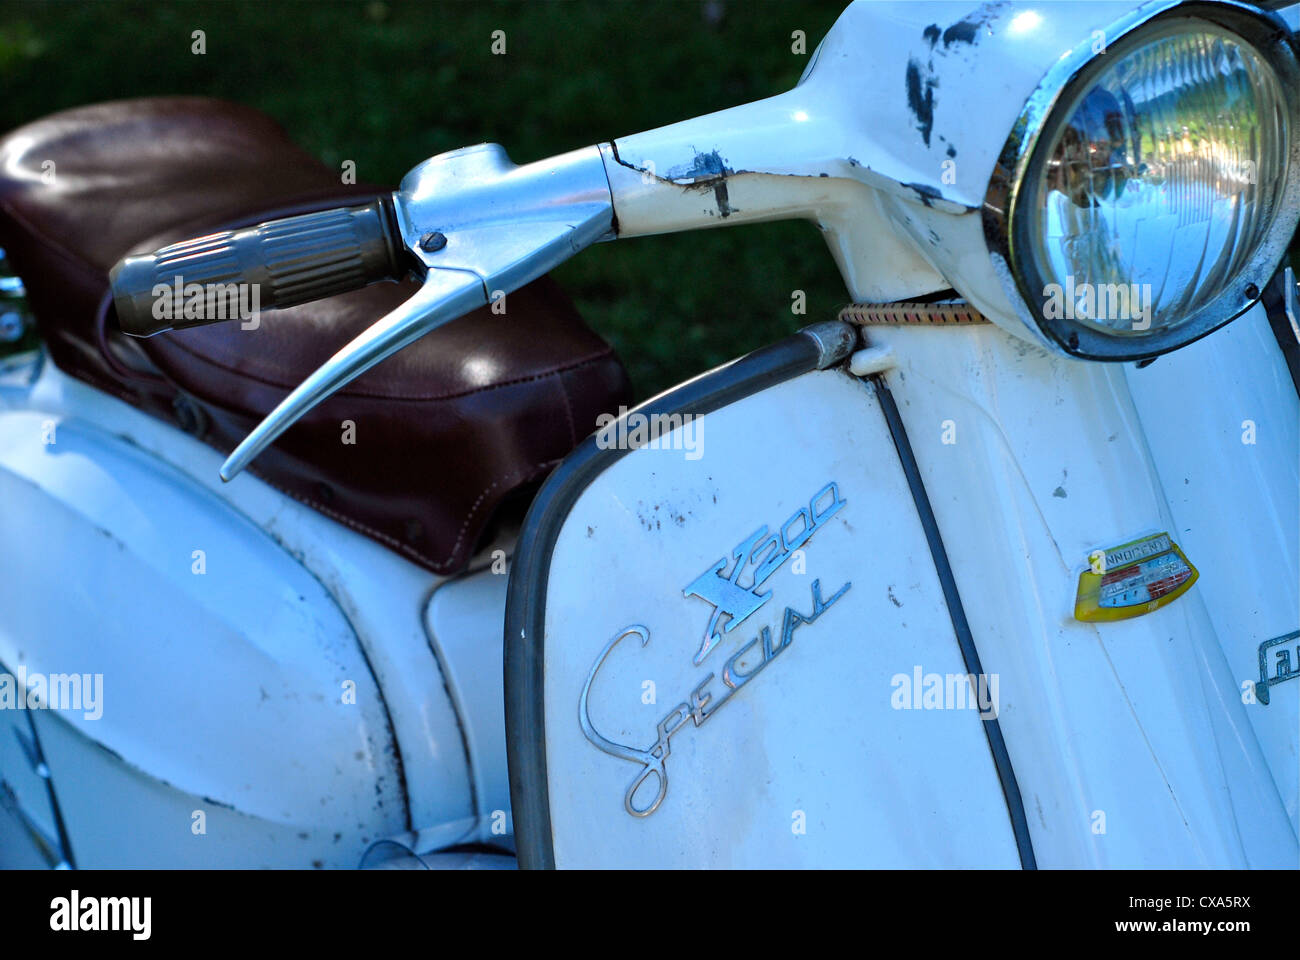 Lambretta sx200 immagini e fotografie stock ad alta risoluzione - Alamy